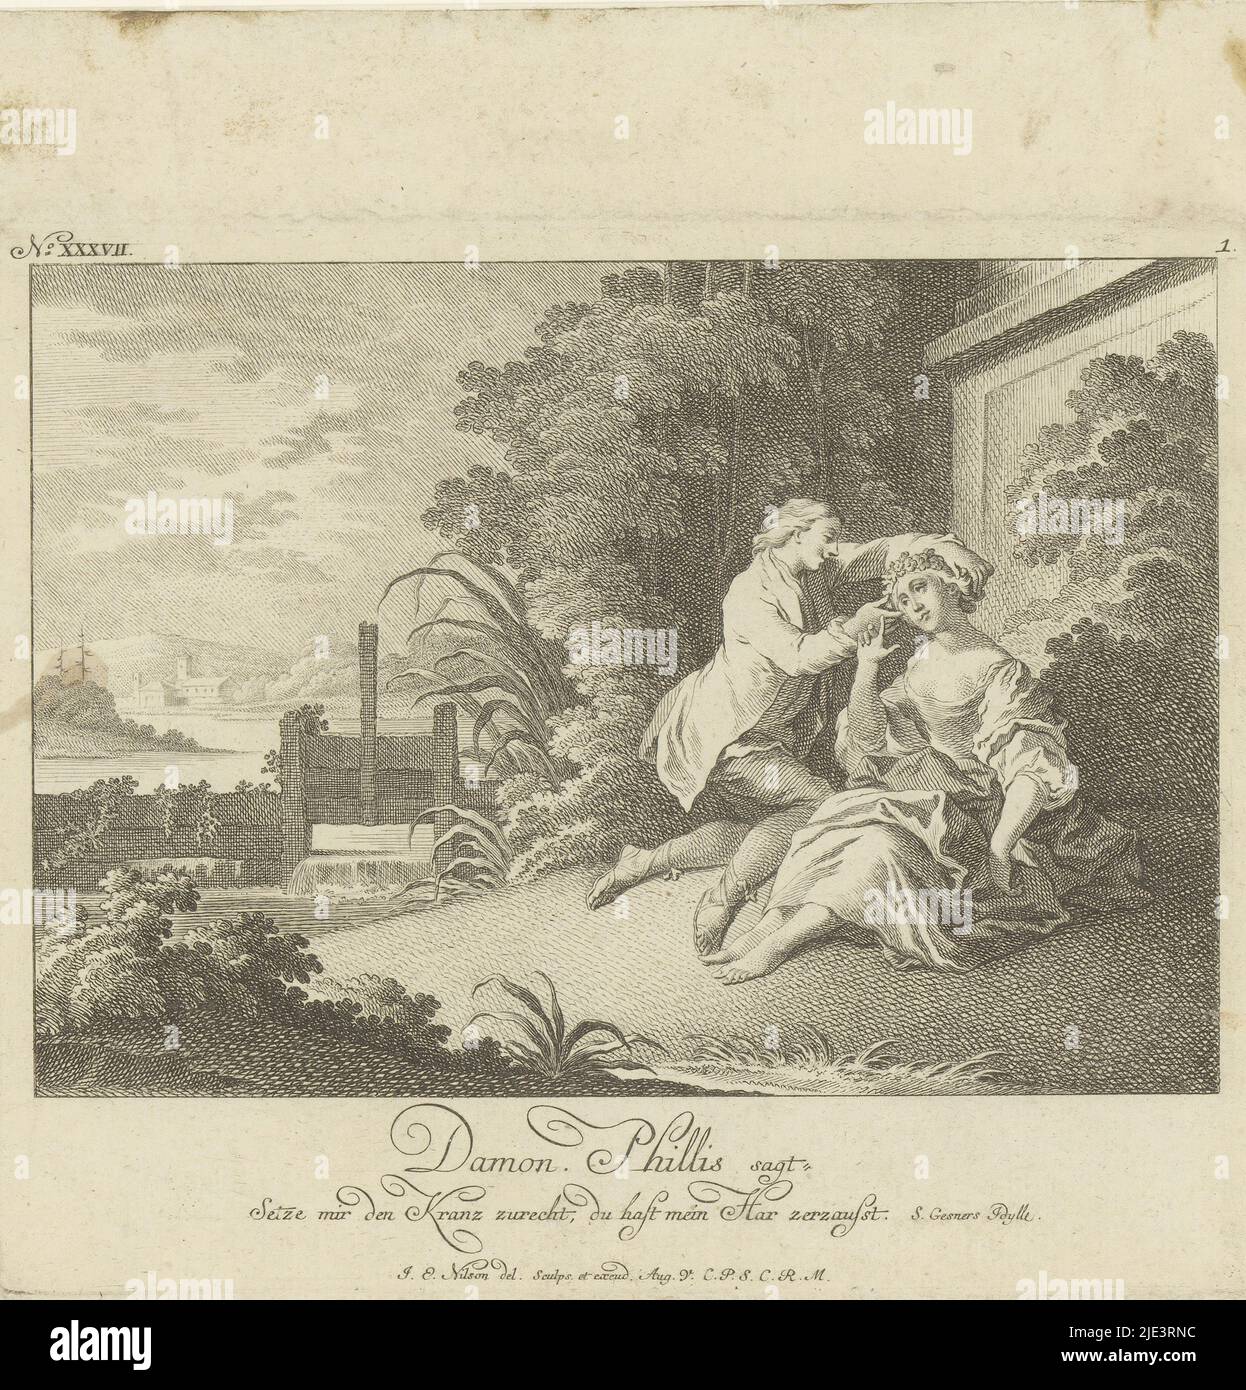 Phyllis e Demophon, stampatore: Johann Esaias Nilson, (menzionato sull'oggetto), Augsburg, 1731 - 1788, carta, incisione, incisione, h 166 mm - l 195 mm Foto Stock